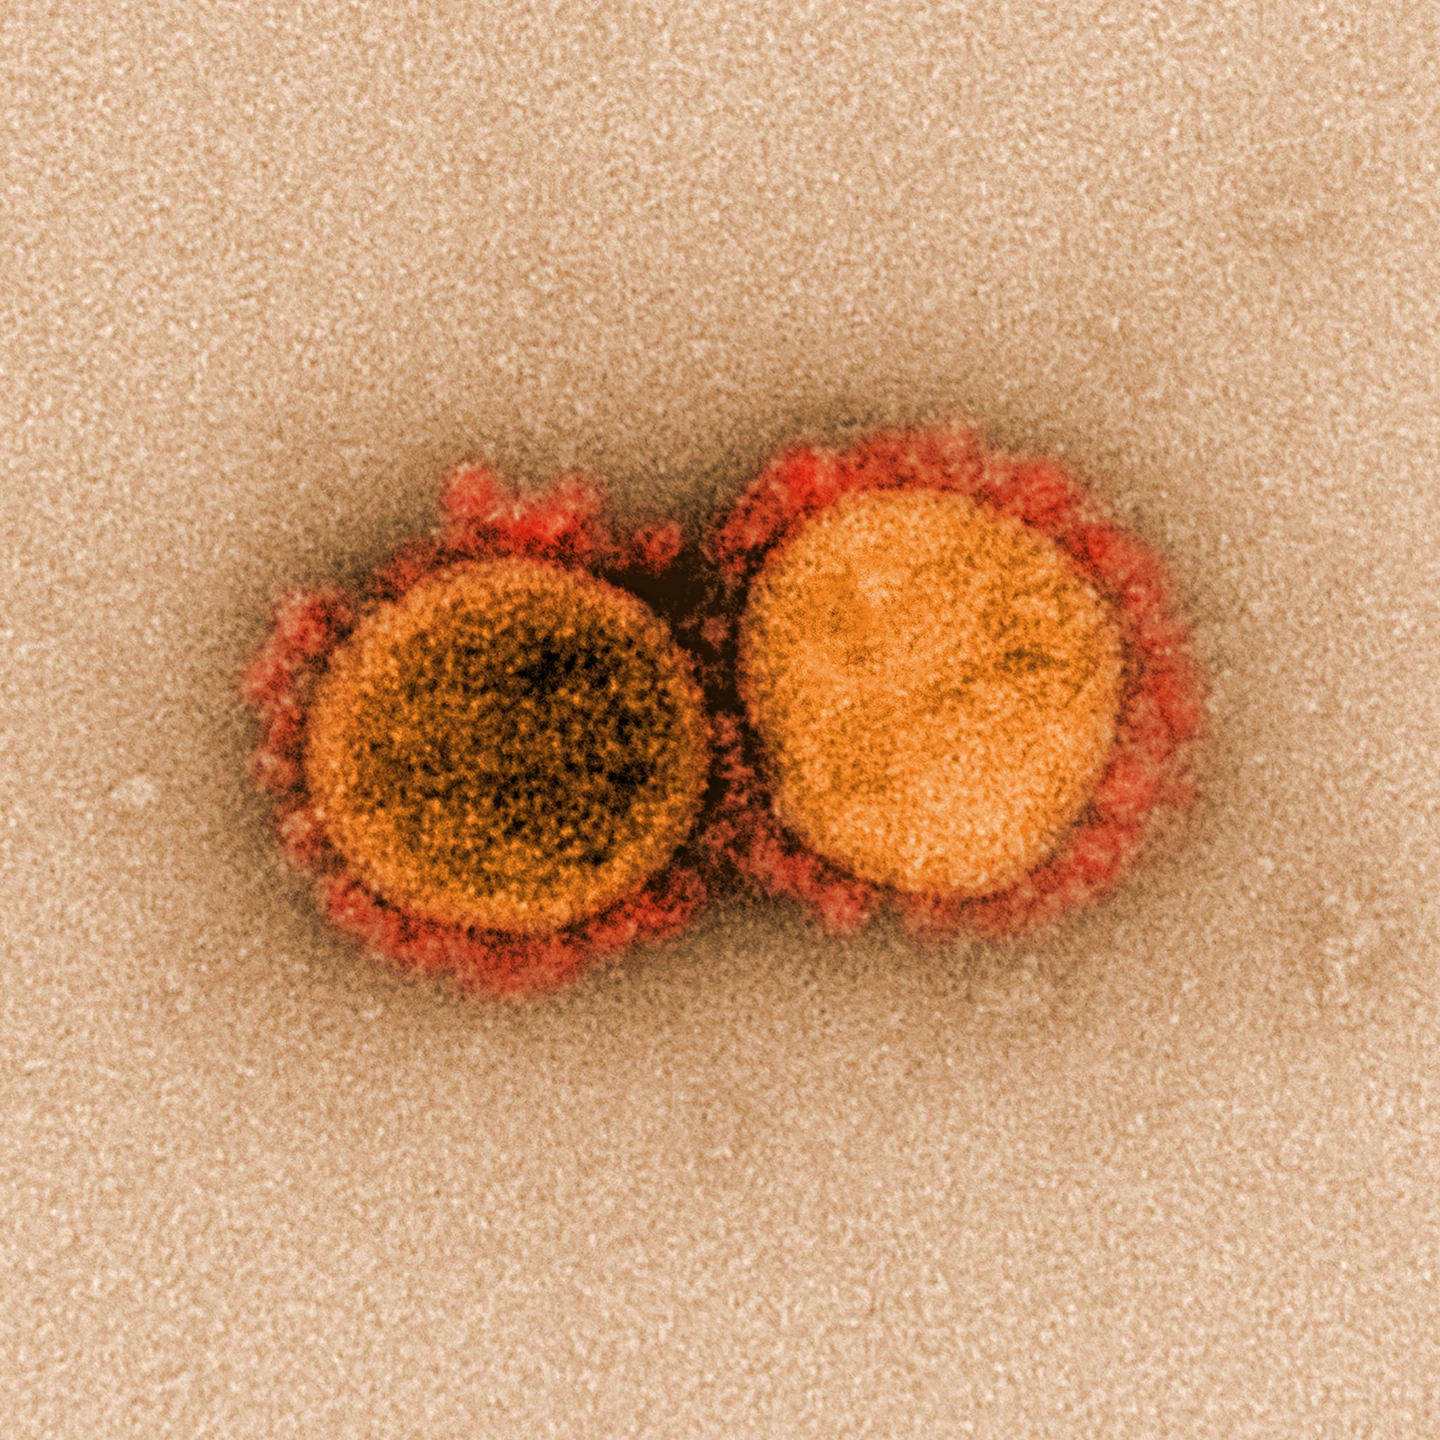 Мікрографія передачі вірусу SARS-CoV-2